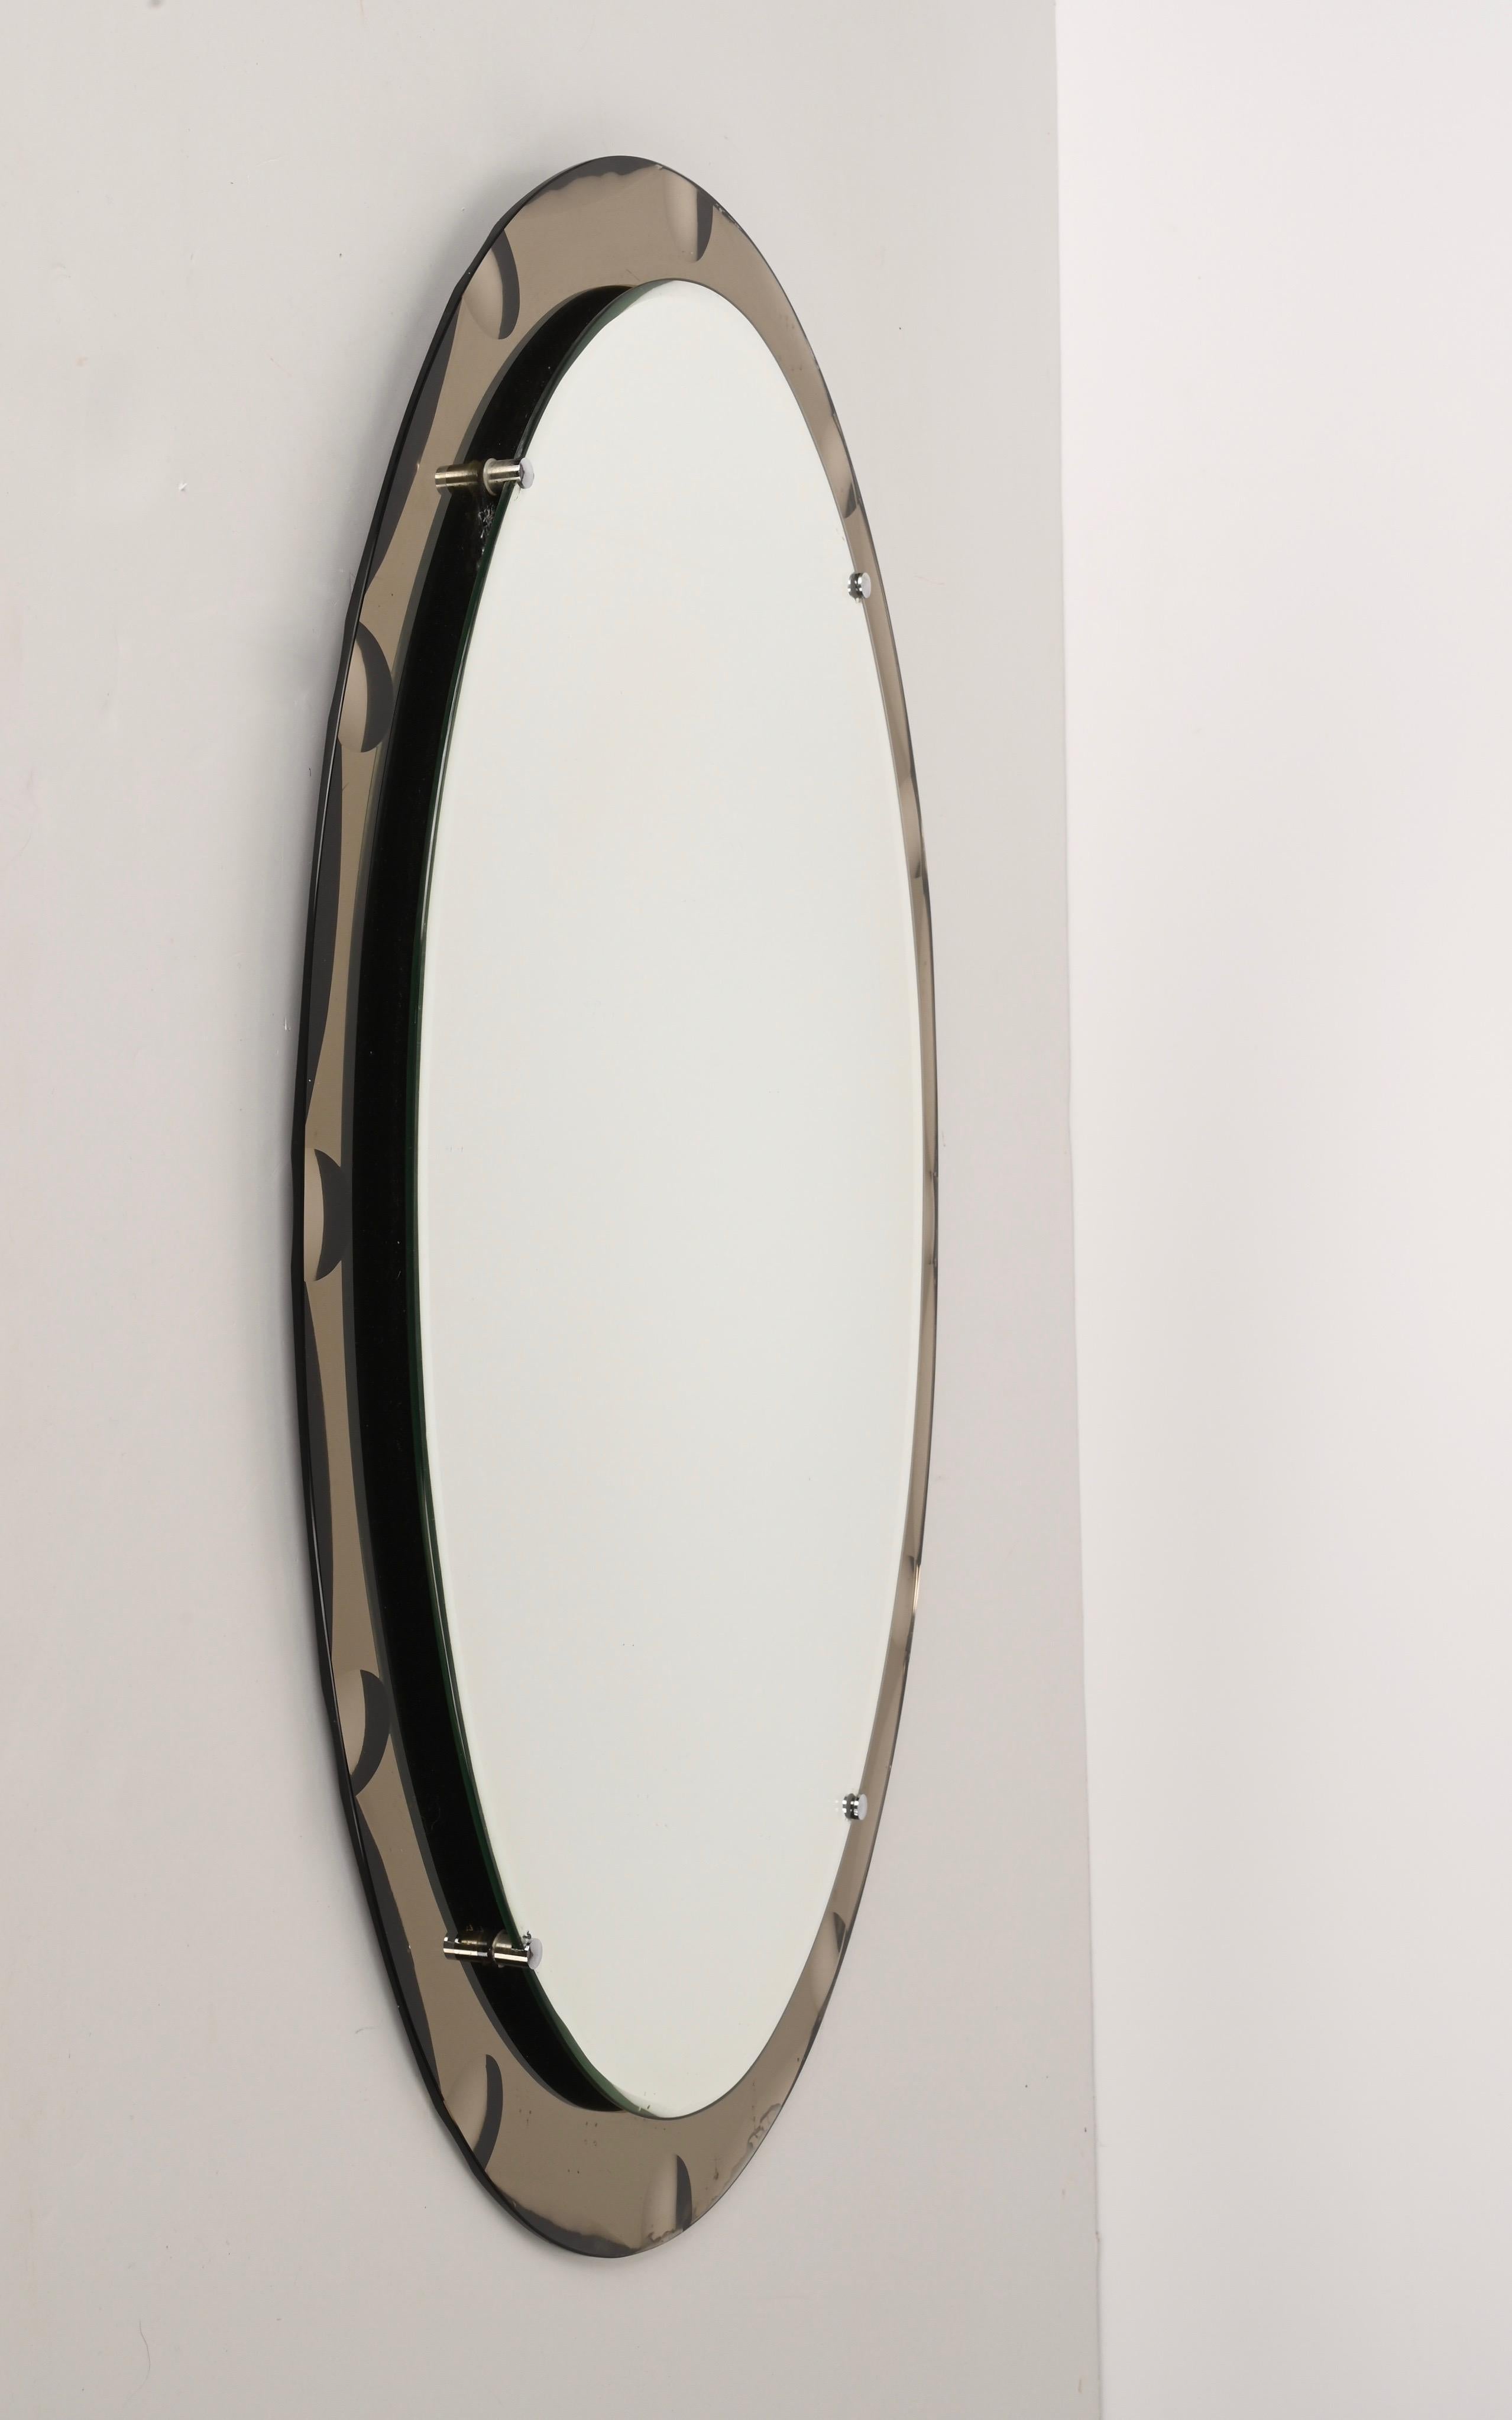 Ovaler Spiegel aus der Mitte des Jahrhunderts mit bronziertem Grabenrahmen. Dieser Spiegel wurde in den 1960er Jahren in Italien im Stil von Cristal Arte entworfen.

Dieses Stück ist ein Beispiel für ausgezeichnete italienische Handwerkskunst mit